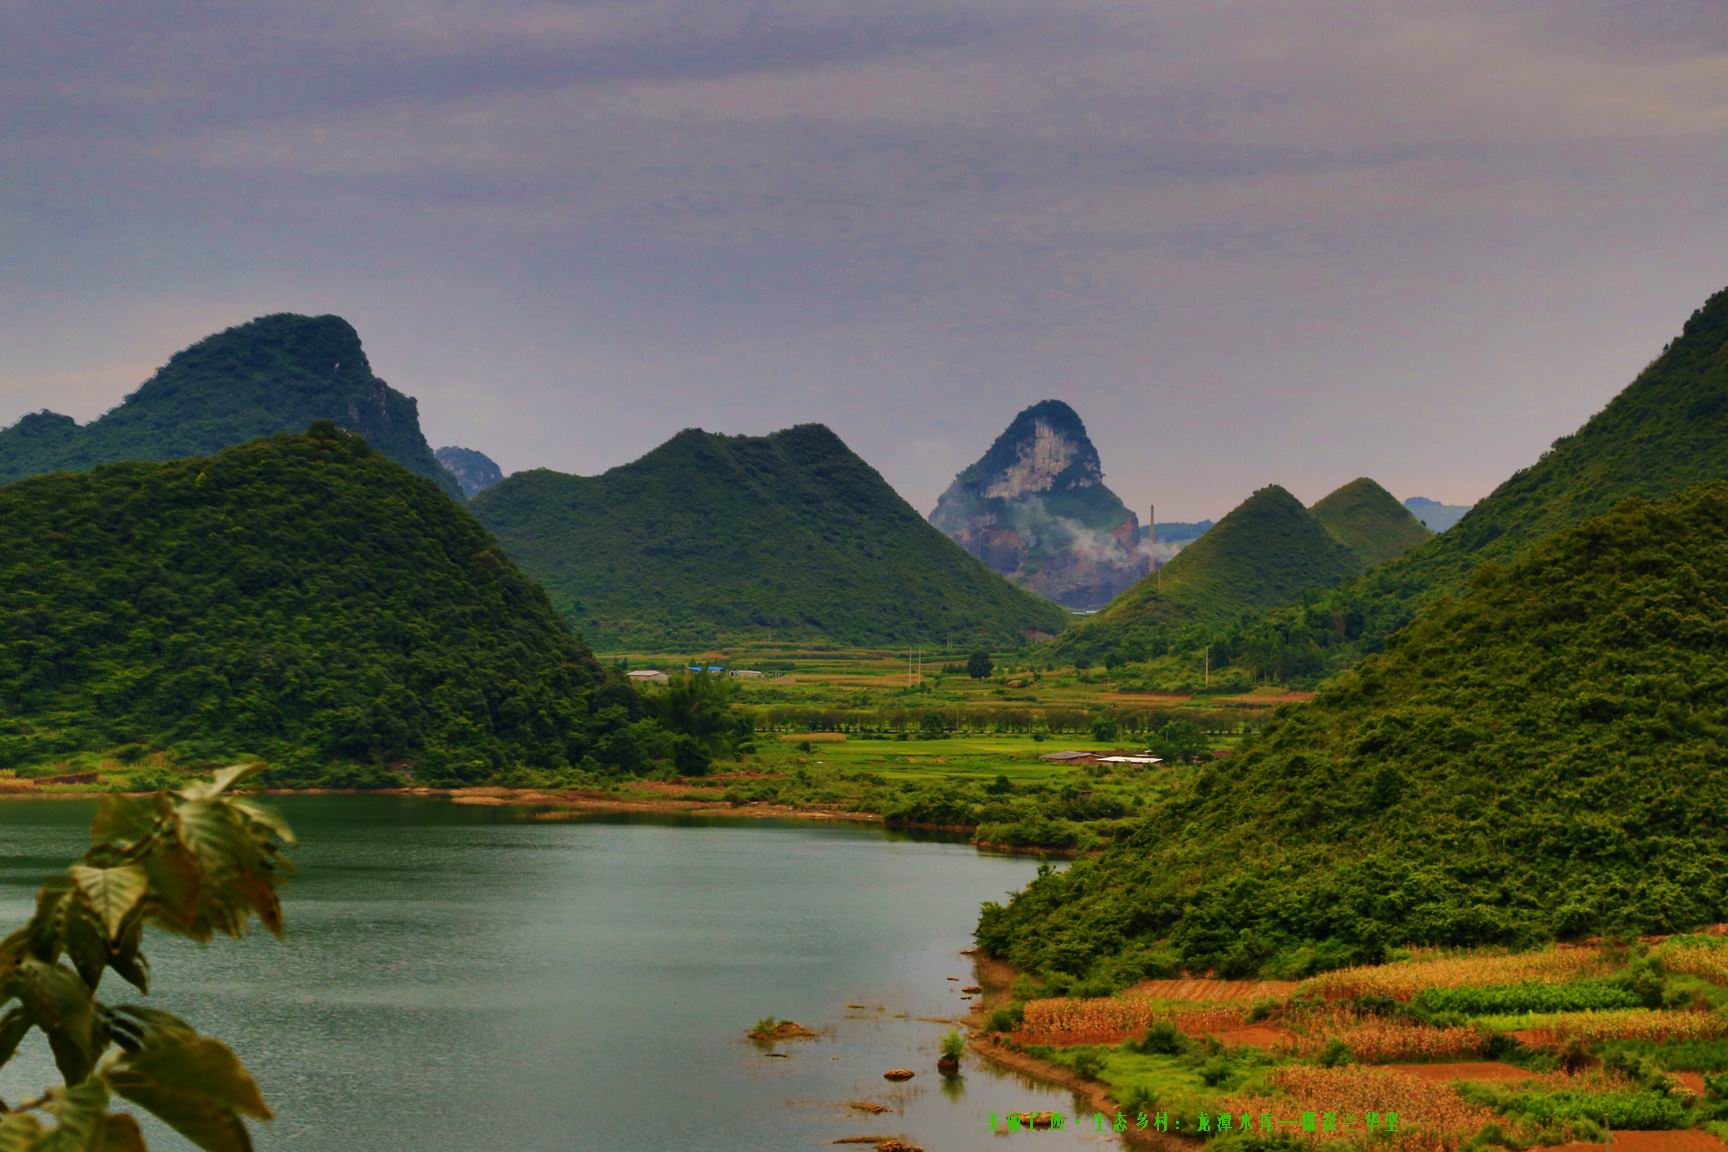 龙潭镇获评“全国十佳生态文化旅游乡镇”荣誉称号